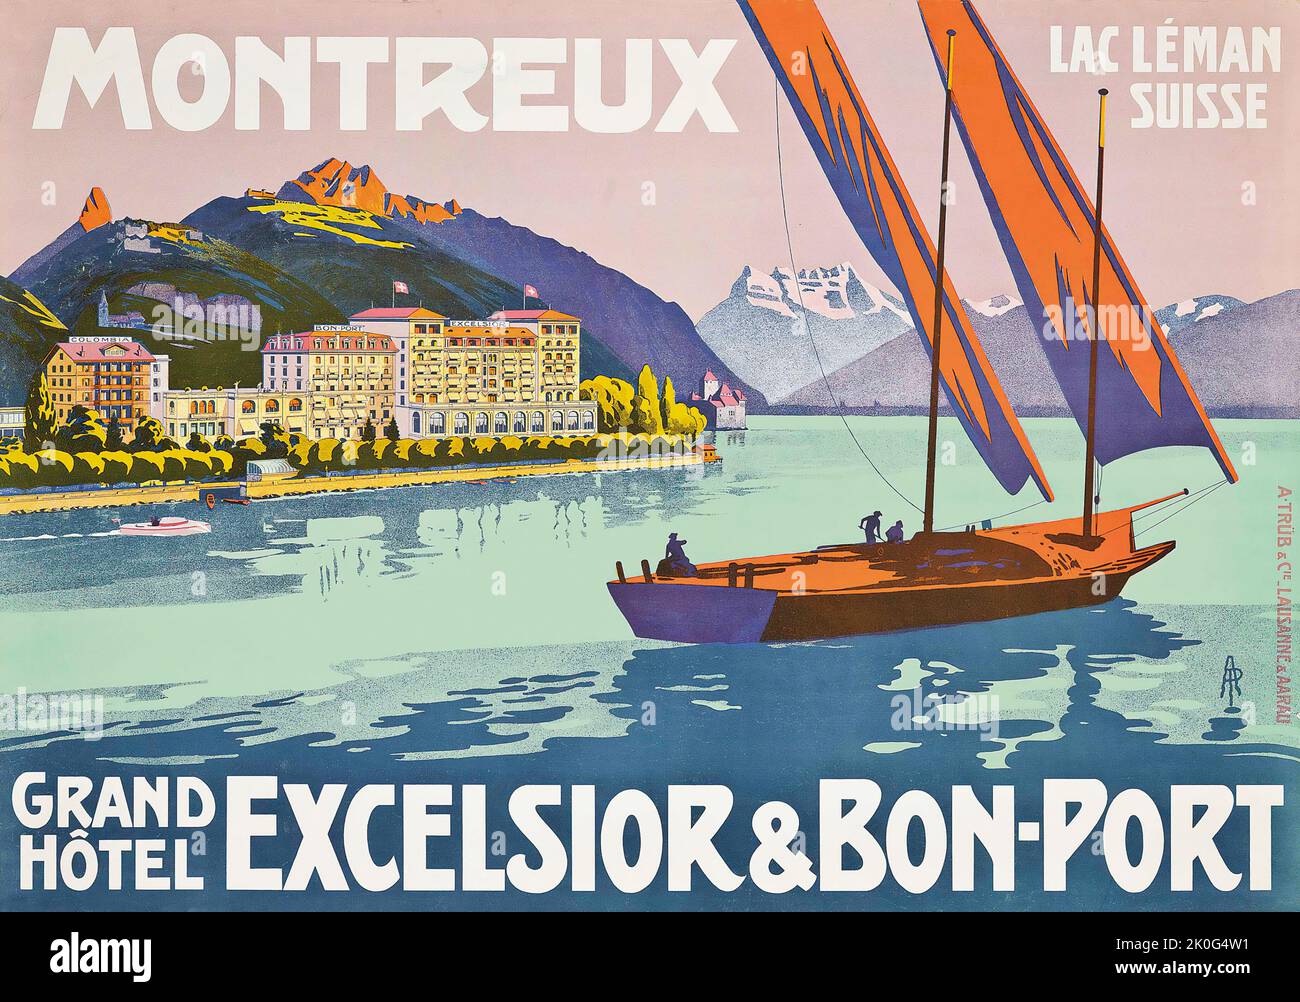 Art AP - MONTREUX, GRAND HÔTEL EXCELSIOR & BON PORT - Schweiz, Suisse, Suisse - affiche Voyage 1907. Banque D'Images